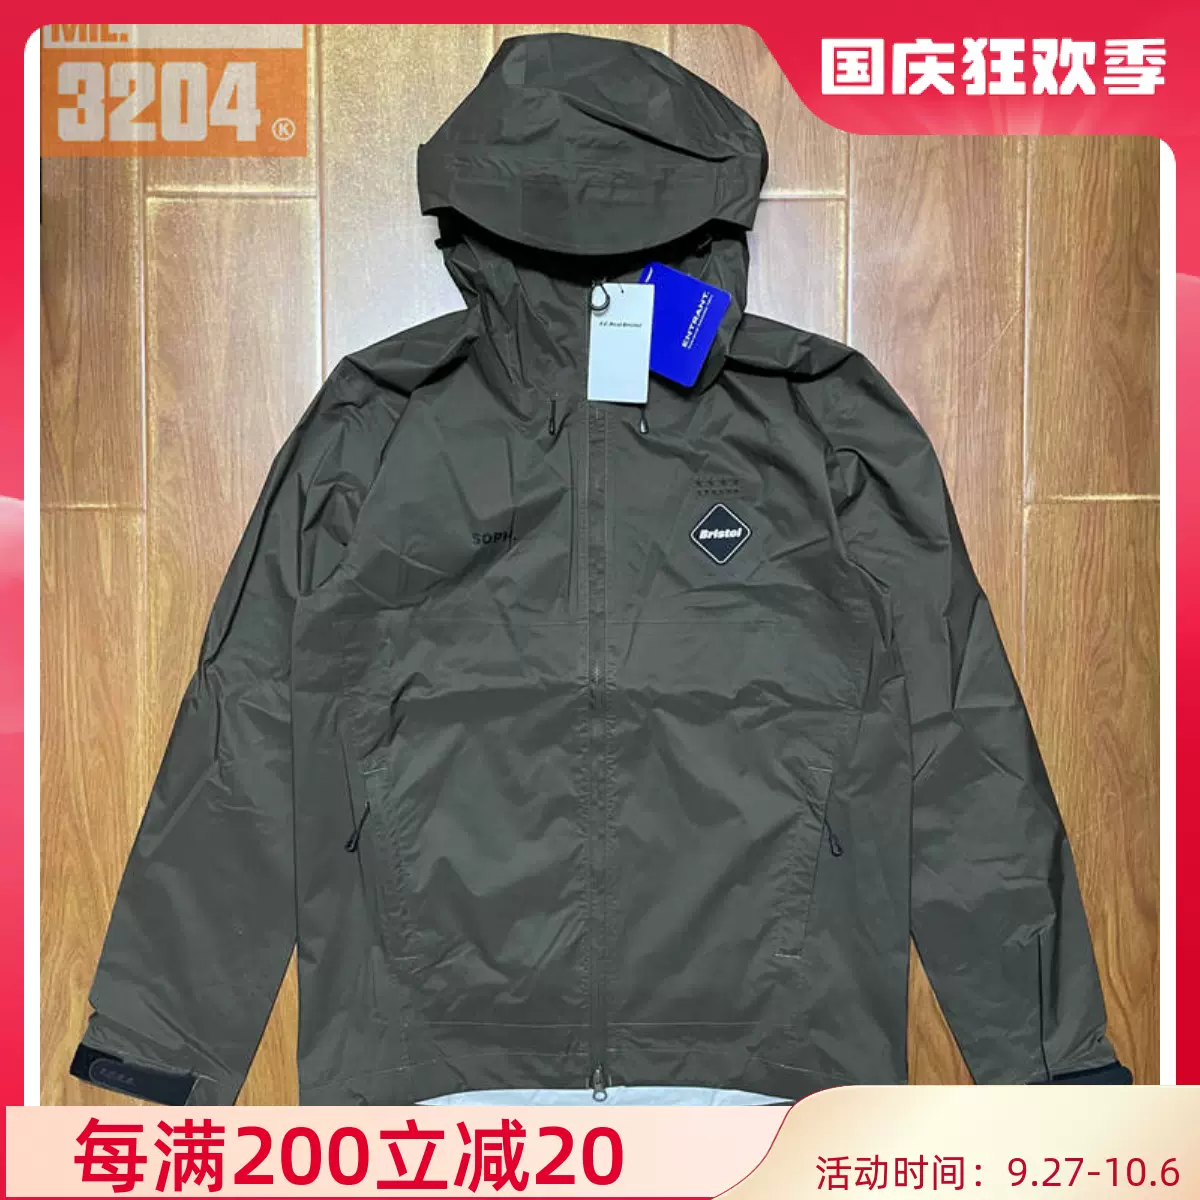 現貨F.C.R.B. RAIN JACKET FCRB 21AW 防水防雨連帽夾克外套-Taobao